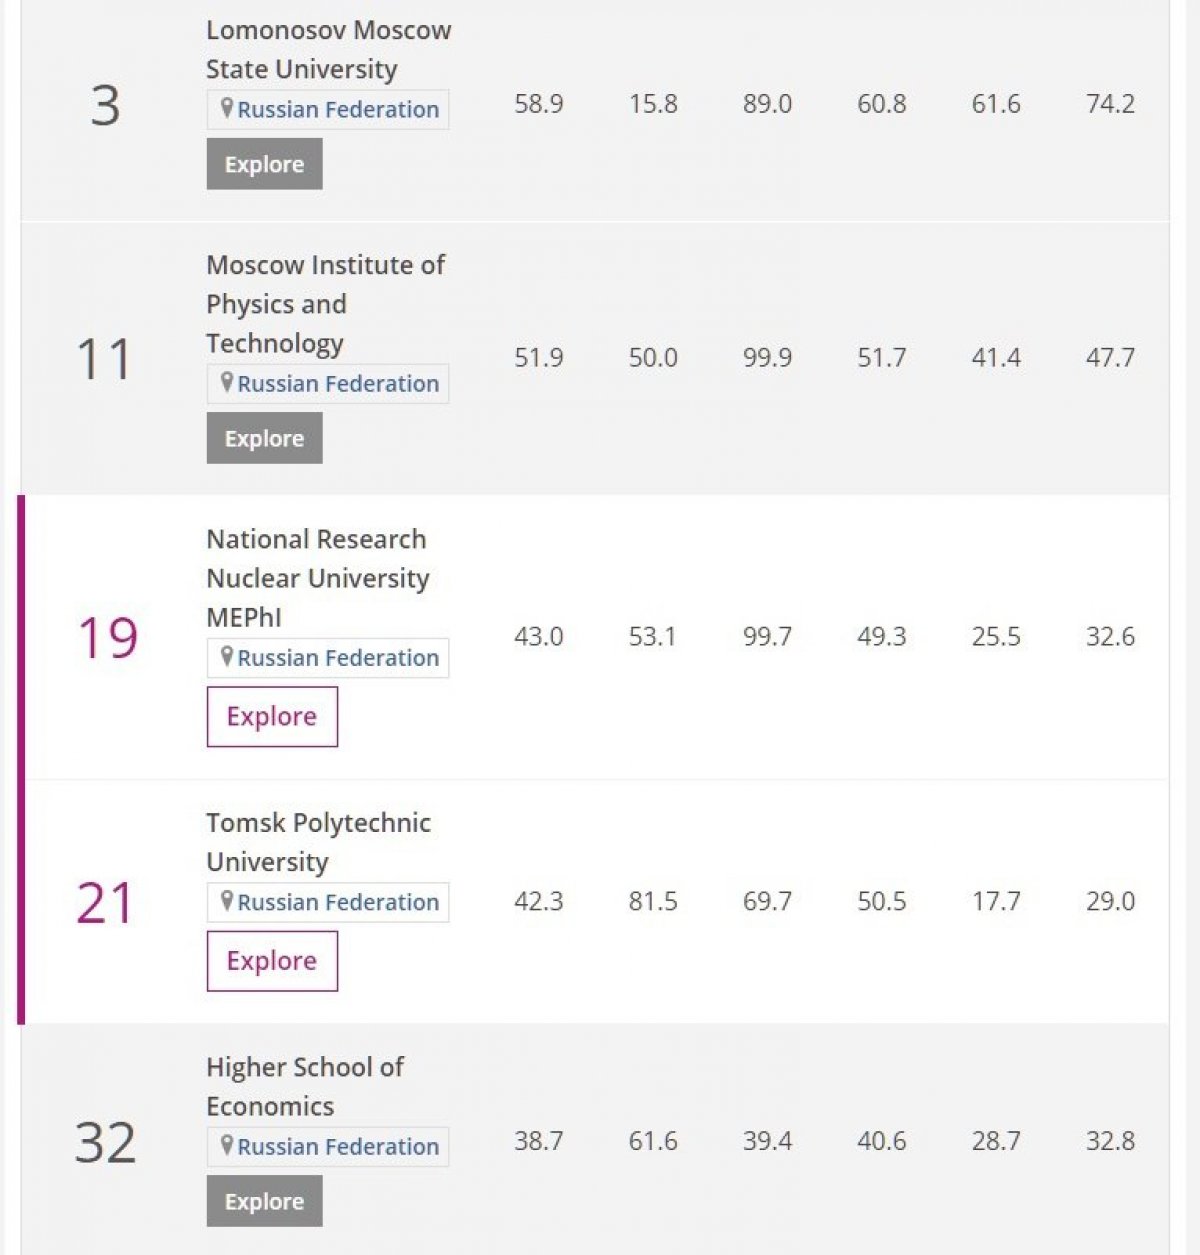 Британское издание Times Higher Education (THE) опубликовало рейтинг университетов стран с активно развивающимися экономиками — Emerging Economies University Rankings 2018. Это издание составляет один из трех самых престижных рейтингов вузов.